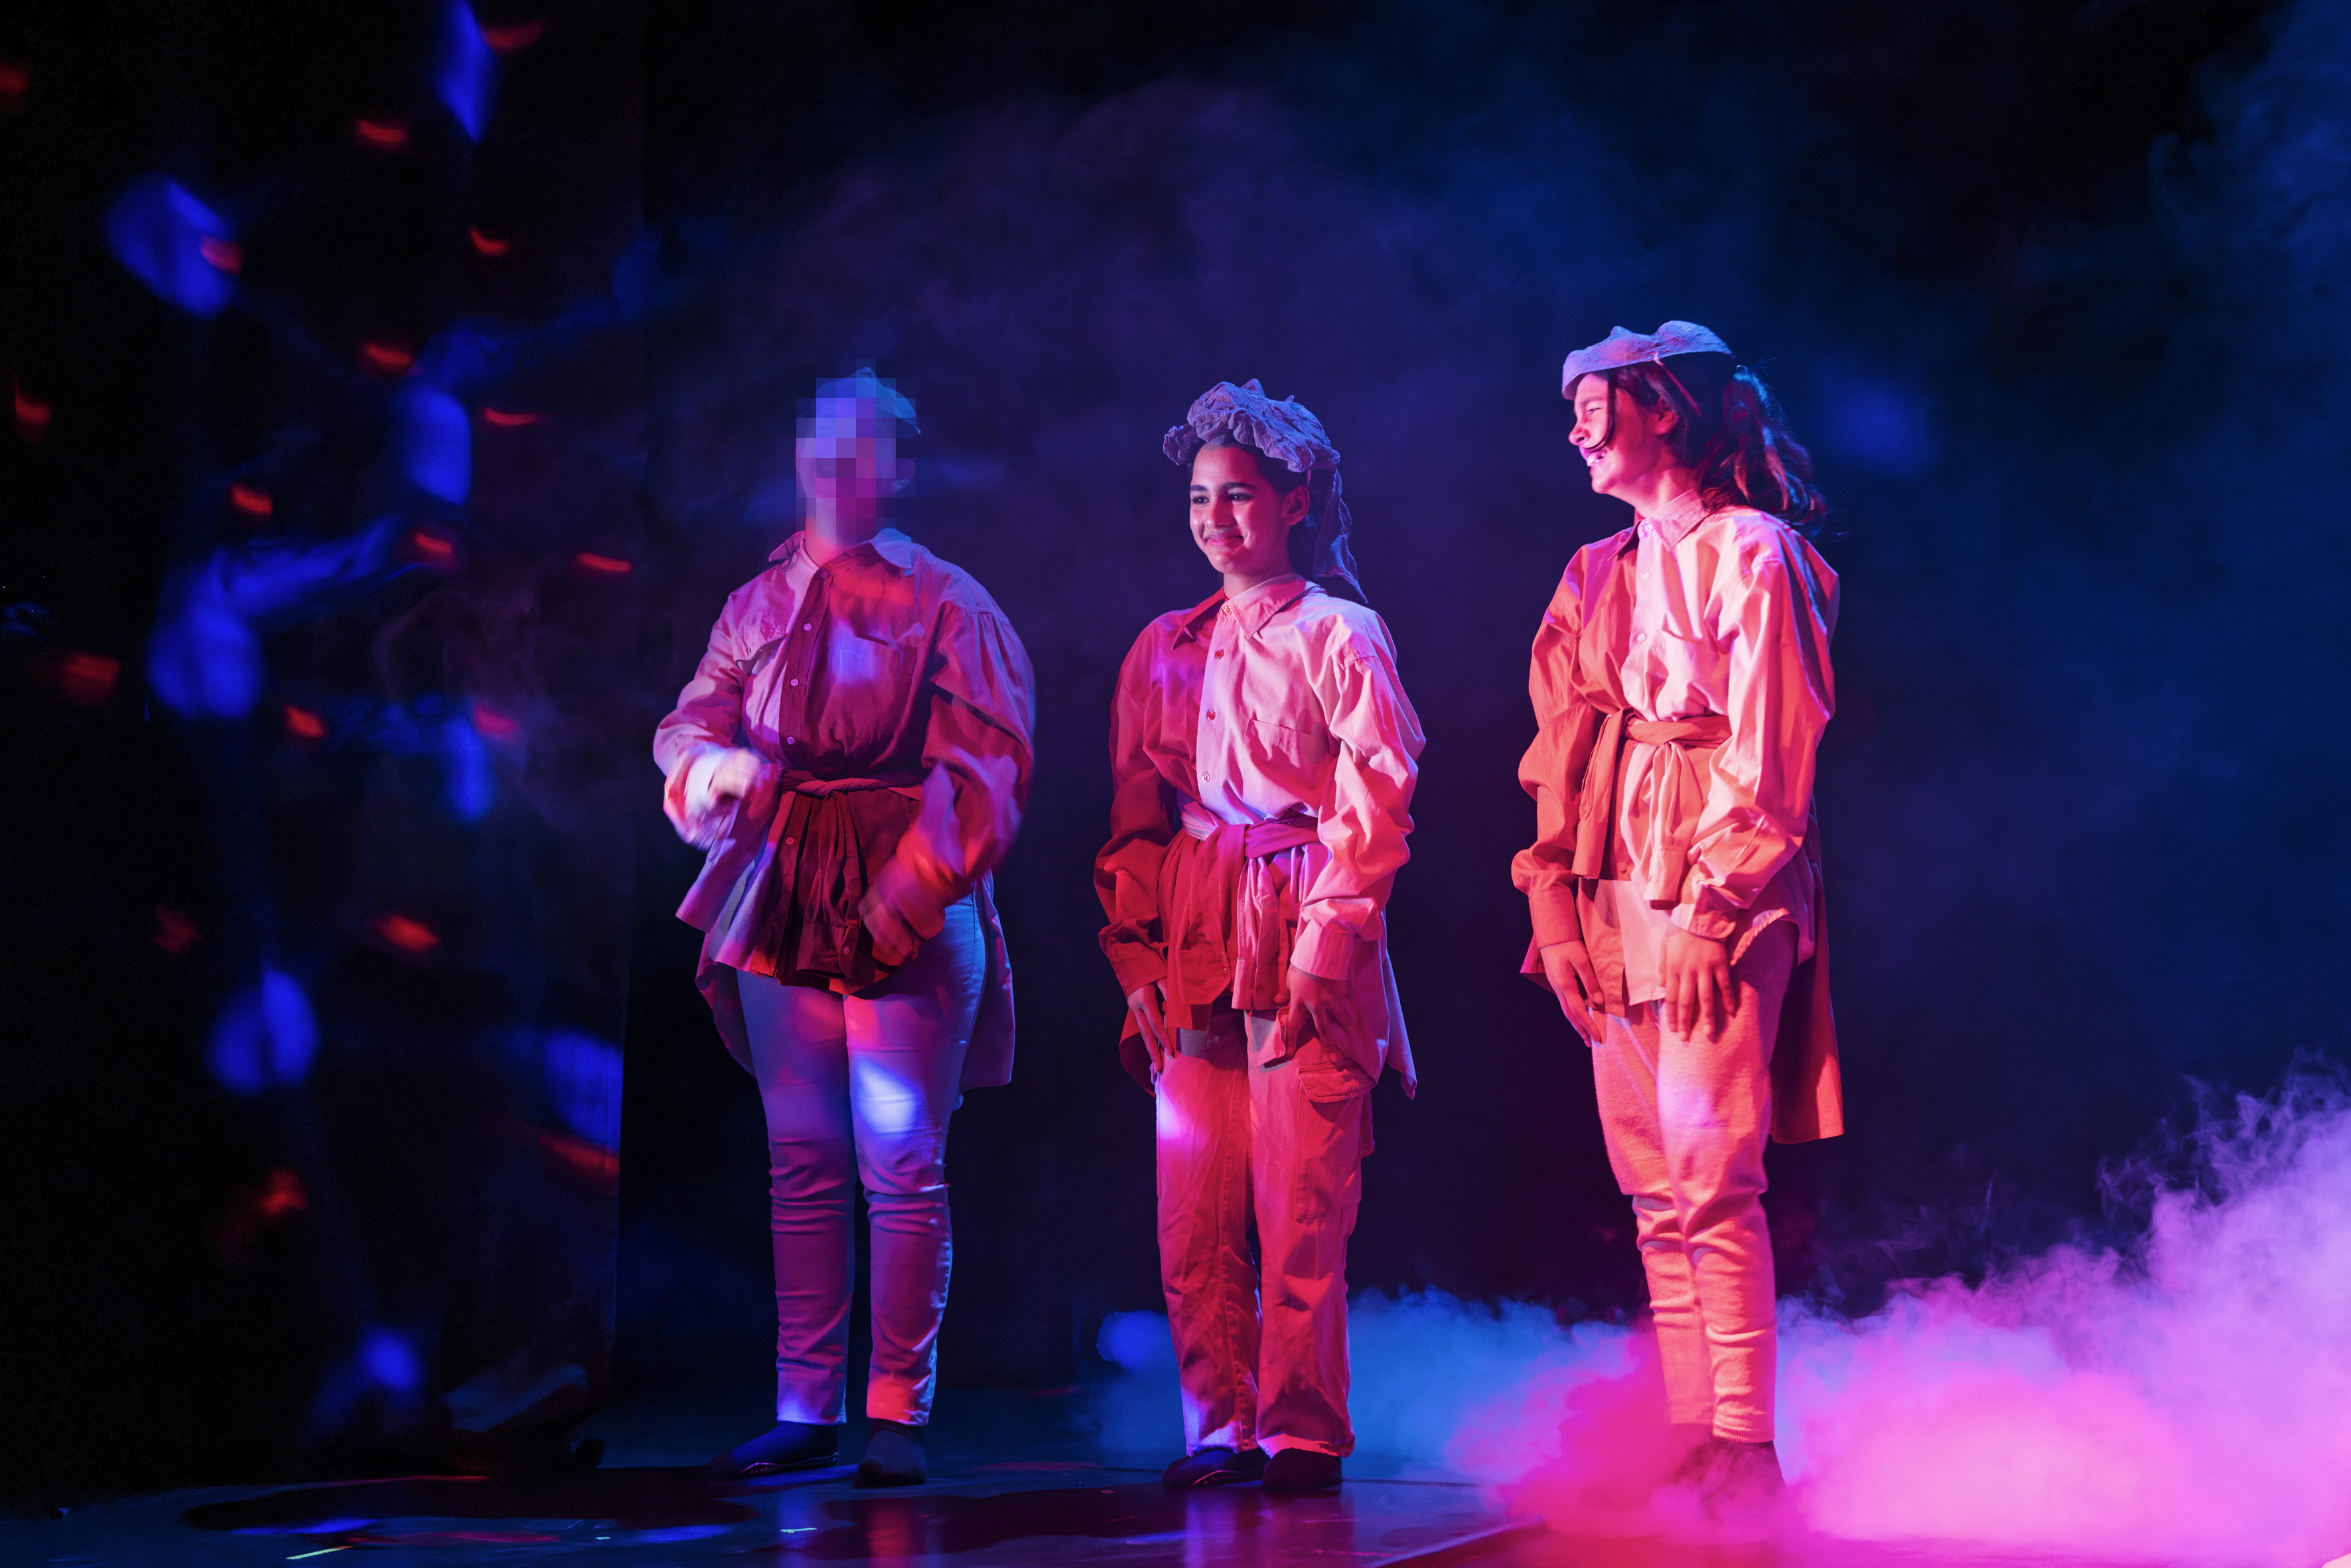 drei Mädchen stehen in einem rötlichen Show-Licht und lachen - von links sieht man Nebel, der sich um die Füße der Mädchen ausbreitet. Sie tragen Herrenhemden übereinander und verknotet